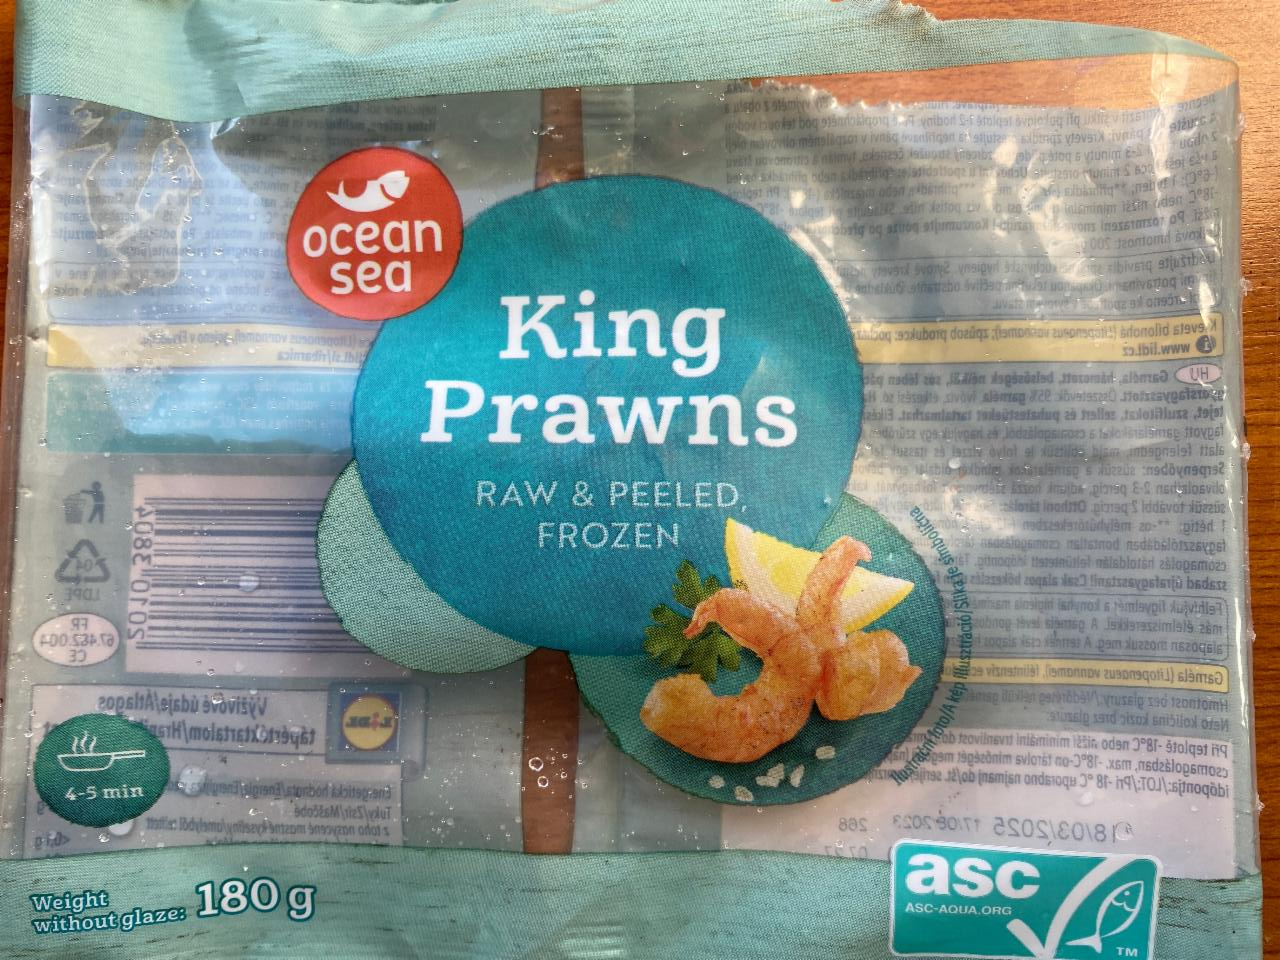 Képek - King prawns raw & peeled, frozen Ocean sea